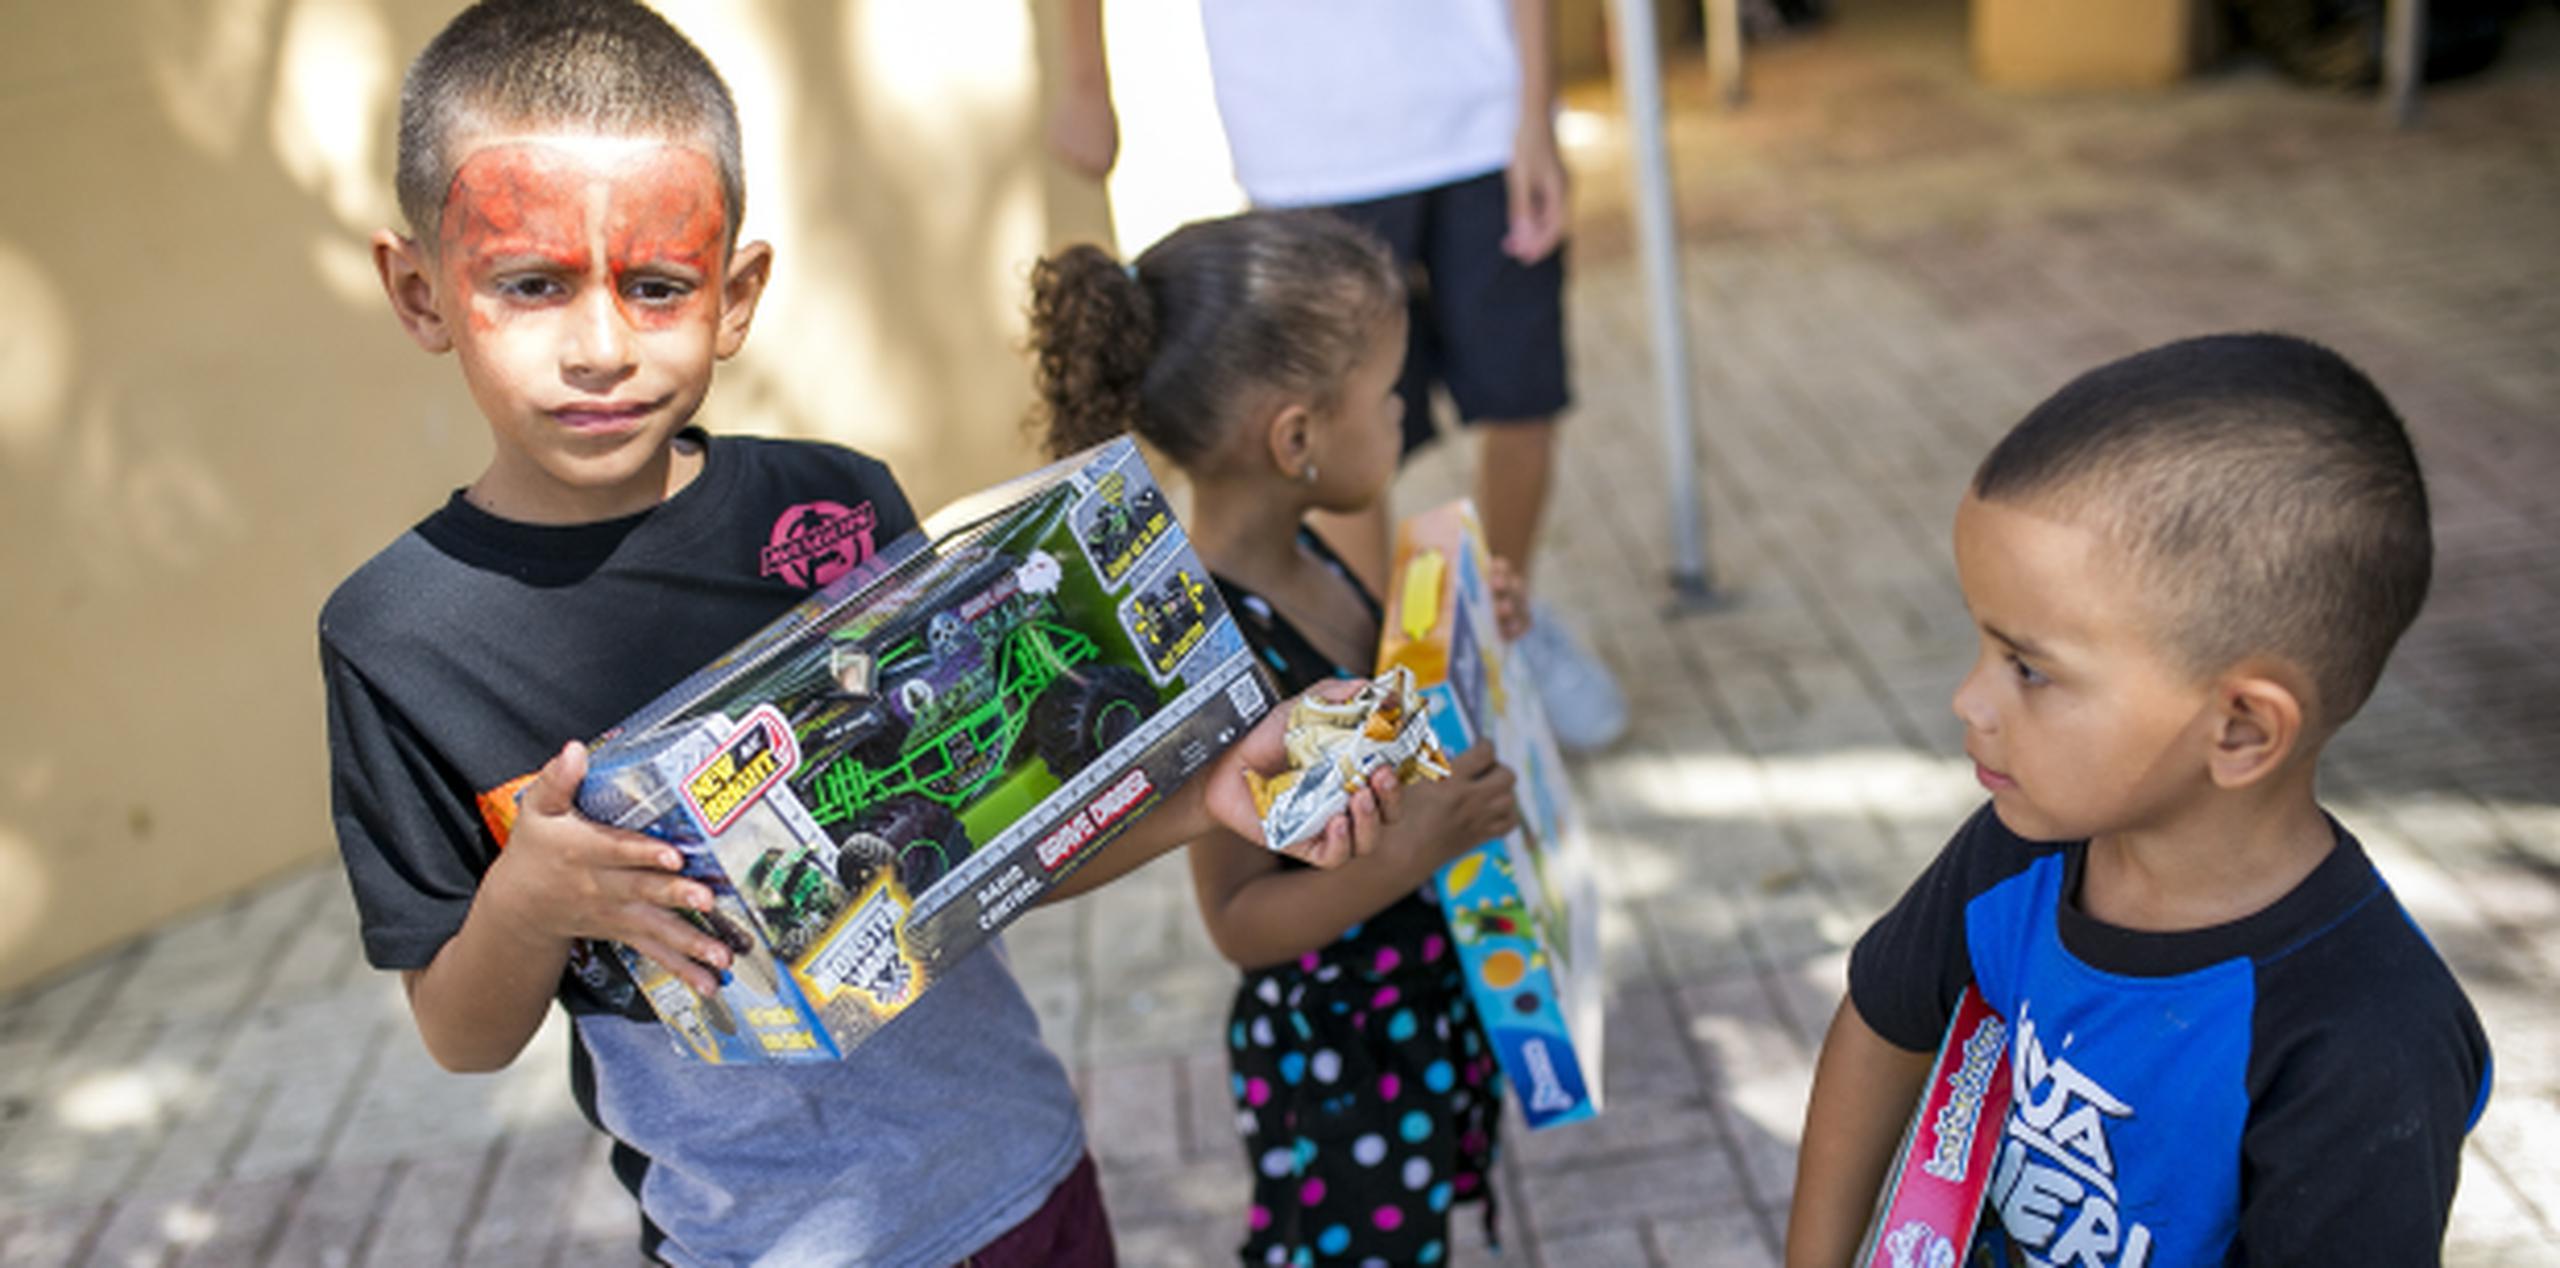 El pequeño Omar, con su carita pintada como el personaje de Spiderman, agarraba su juguete junto a sus hermanitos. (Para Primera Hora / Xavier García)